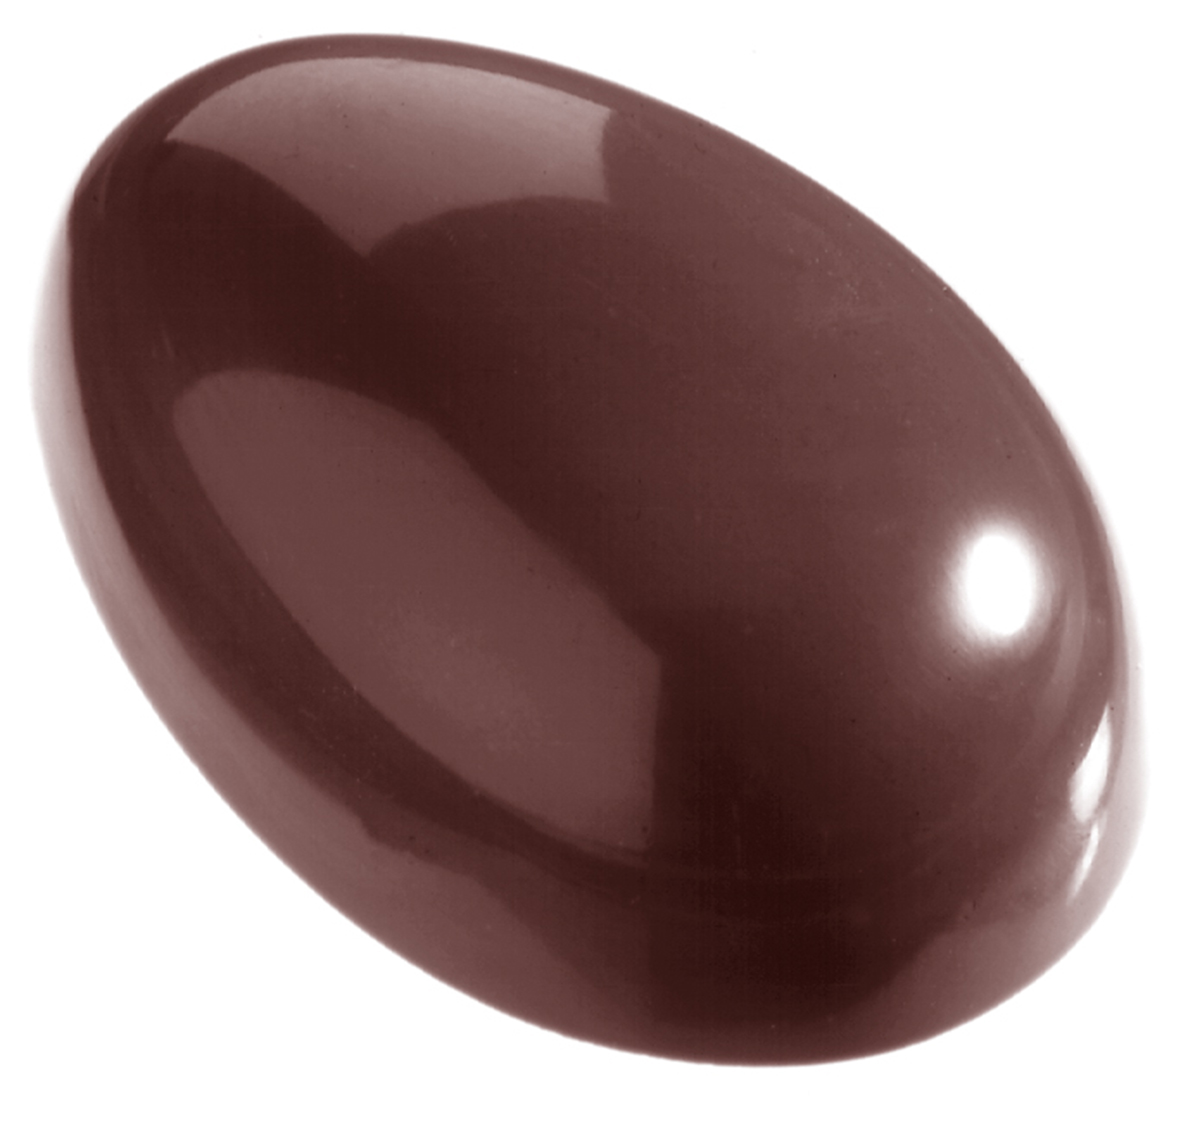 Billede af Professionel chokoladeform i polycarbonat - Egg smooth 7 cm CW1251